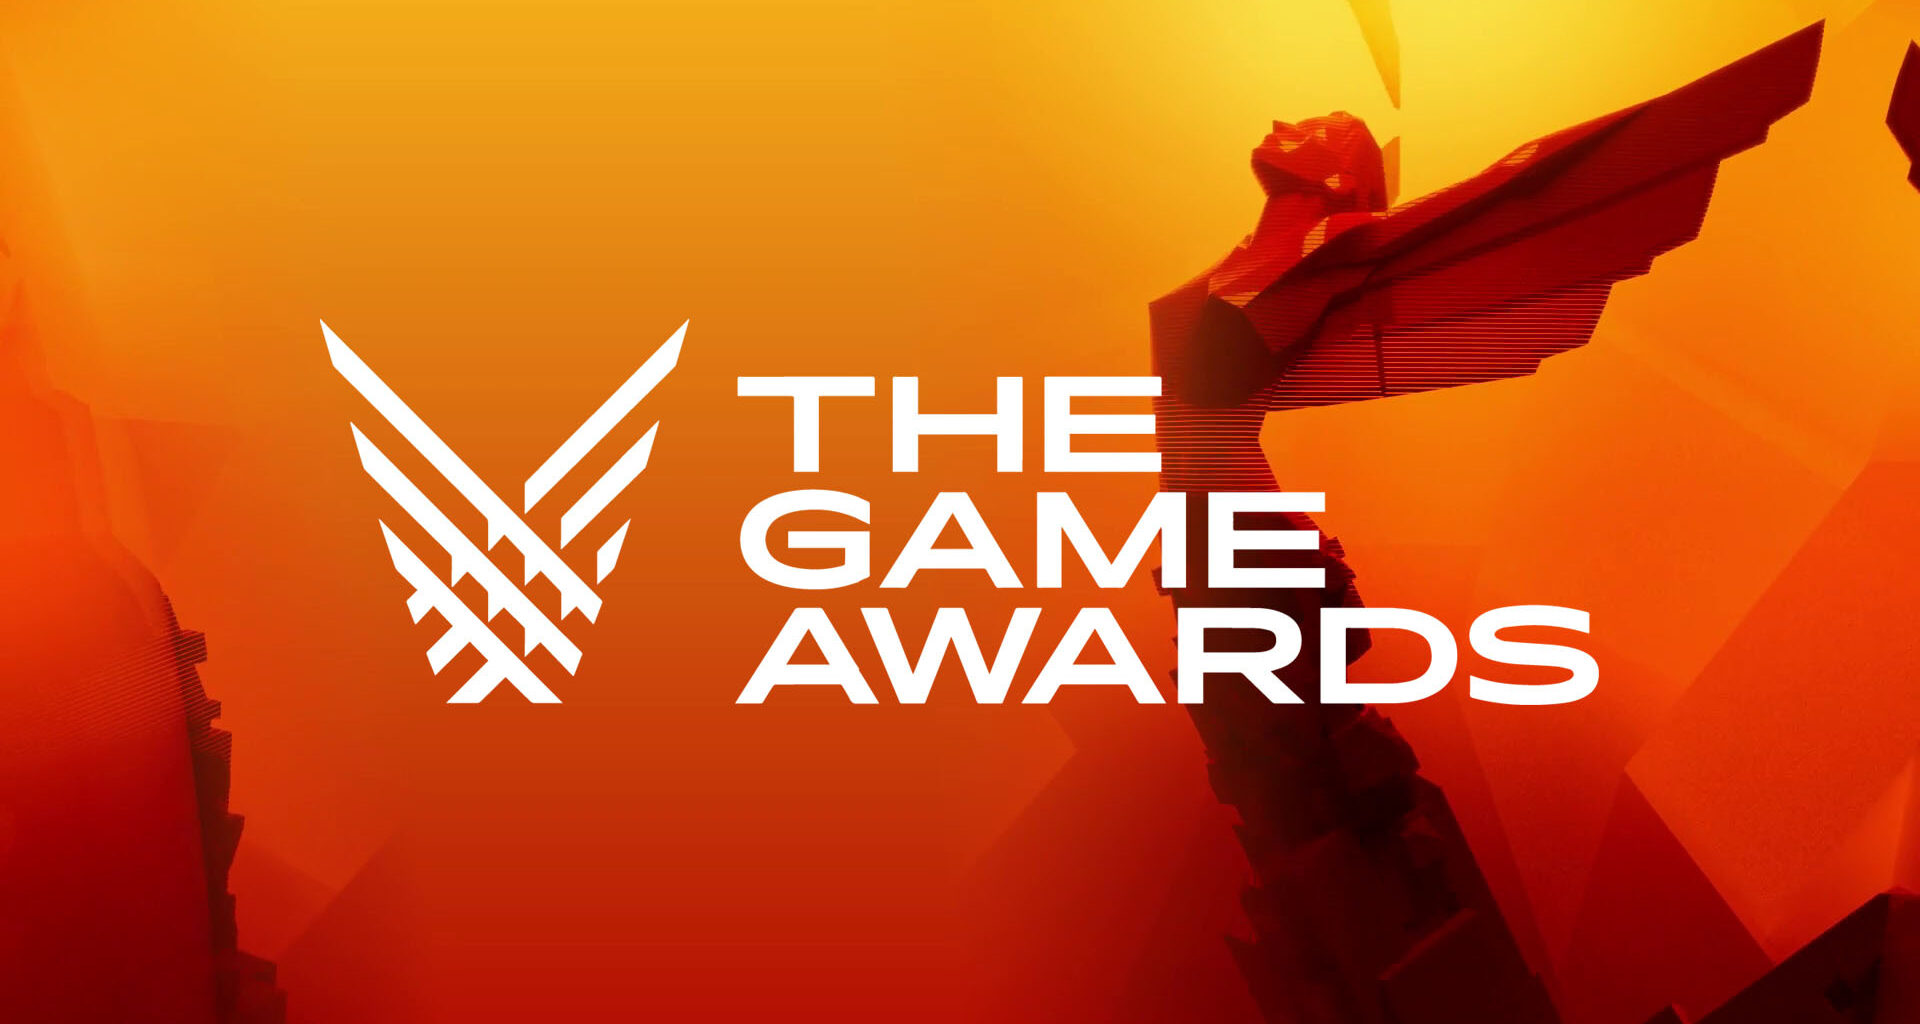 Game Pass tem 16 jogos indicados em alguma categoria no The Game Awards